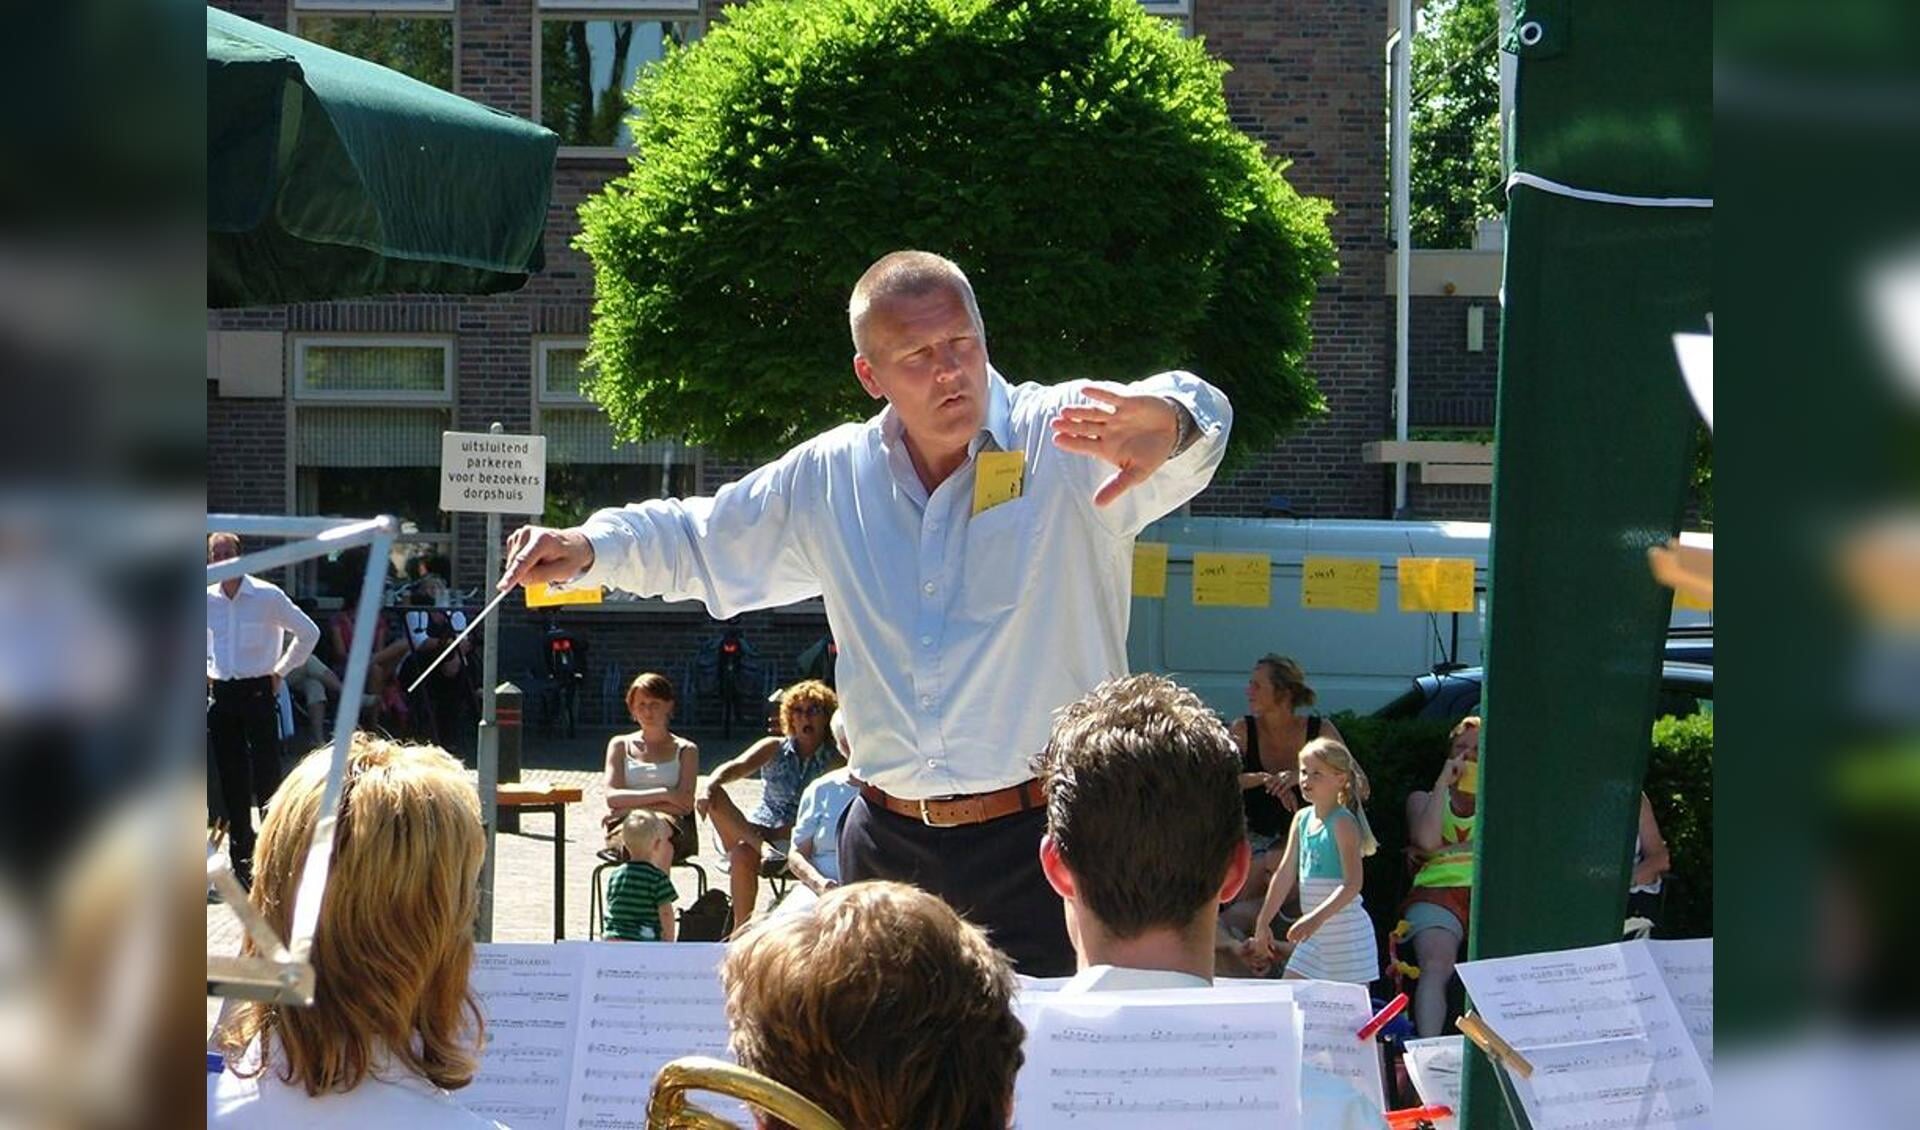 De jubilerende dirigent Bert Ridder in actie. (Foto: aangeleverd)